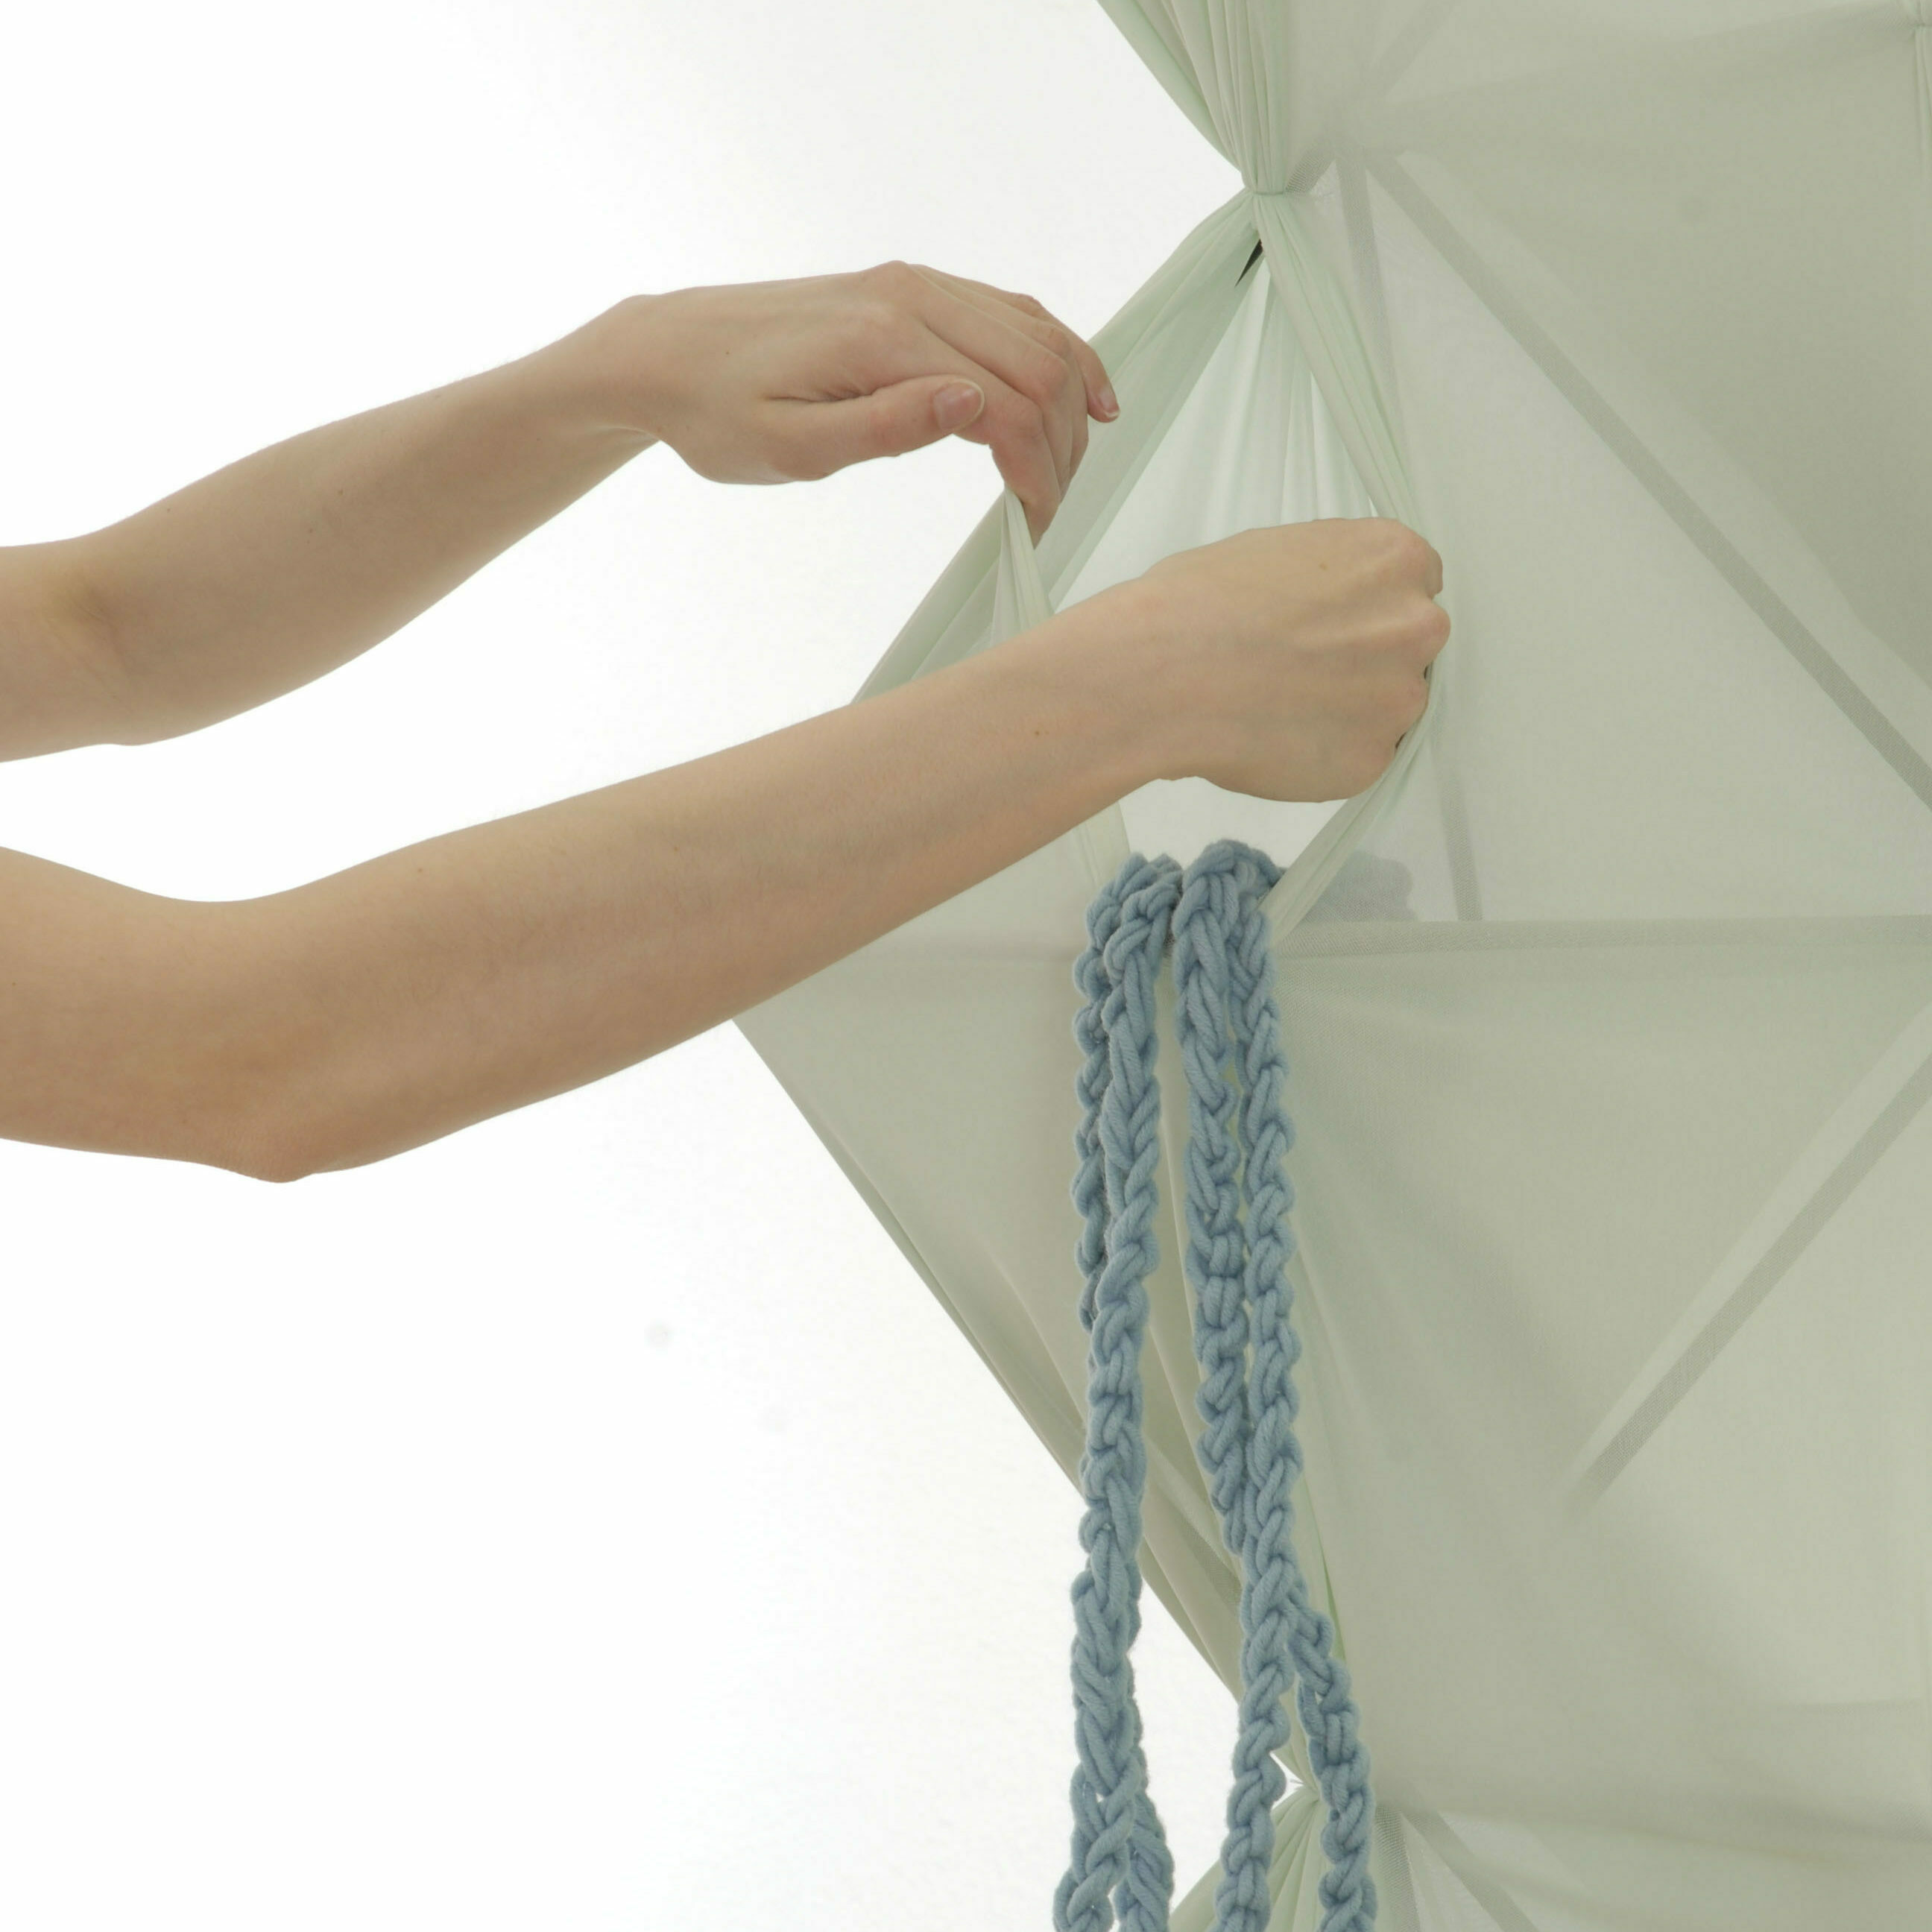 london meike harde textilmoebel aufbewahrung kommode hocker kleiderschrank design inneneinrichtung einrichtungsidee